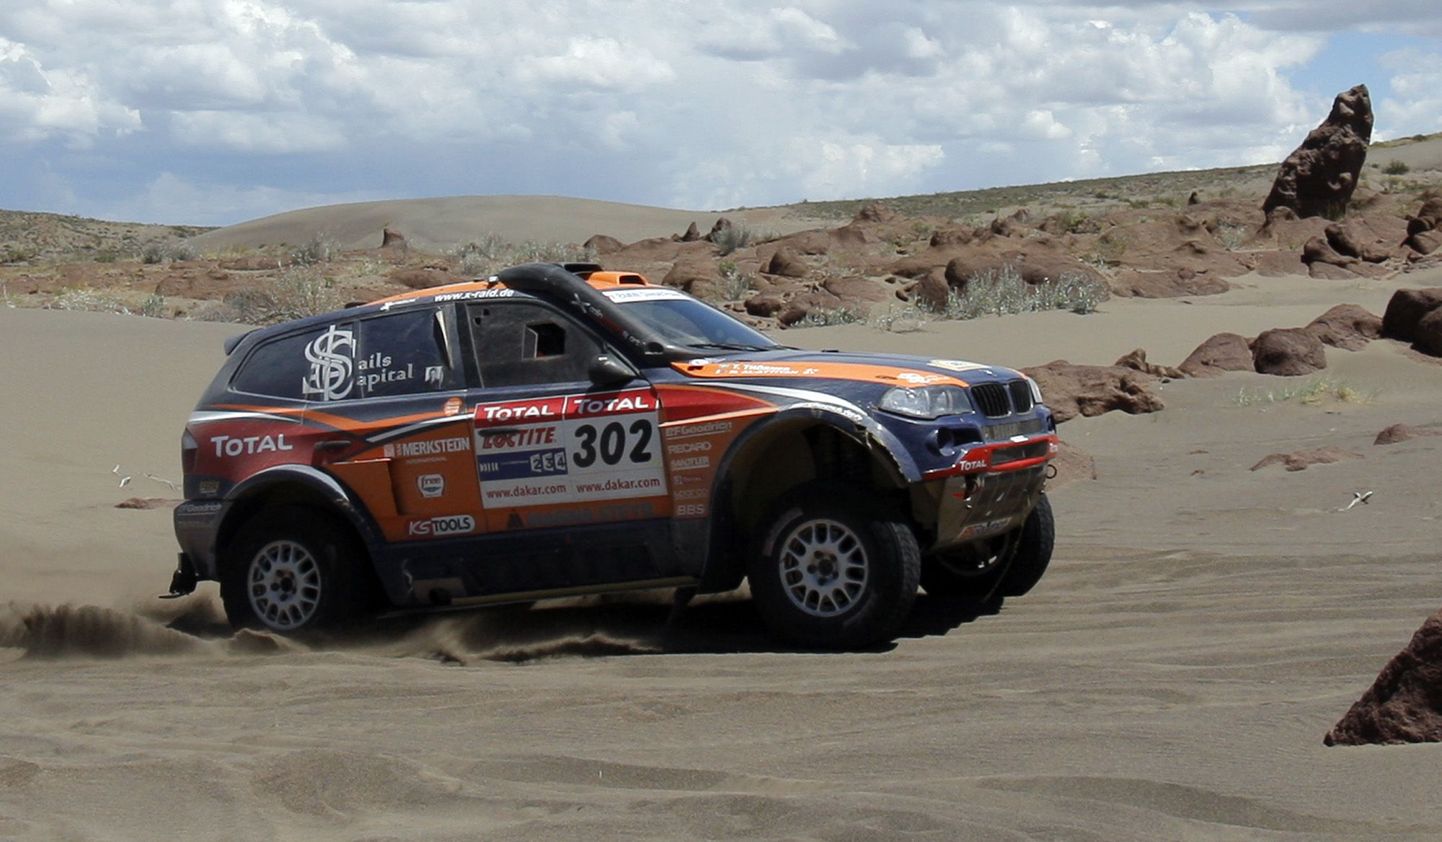 Katari sõitja Nasser Saleh Al Attiyah diskvalifitseeriti Dakari rallilt.